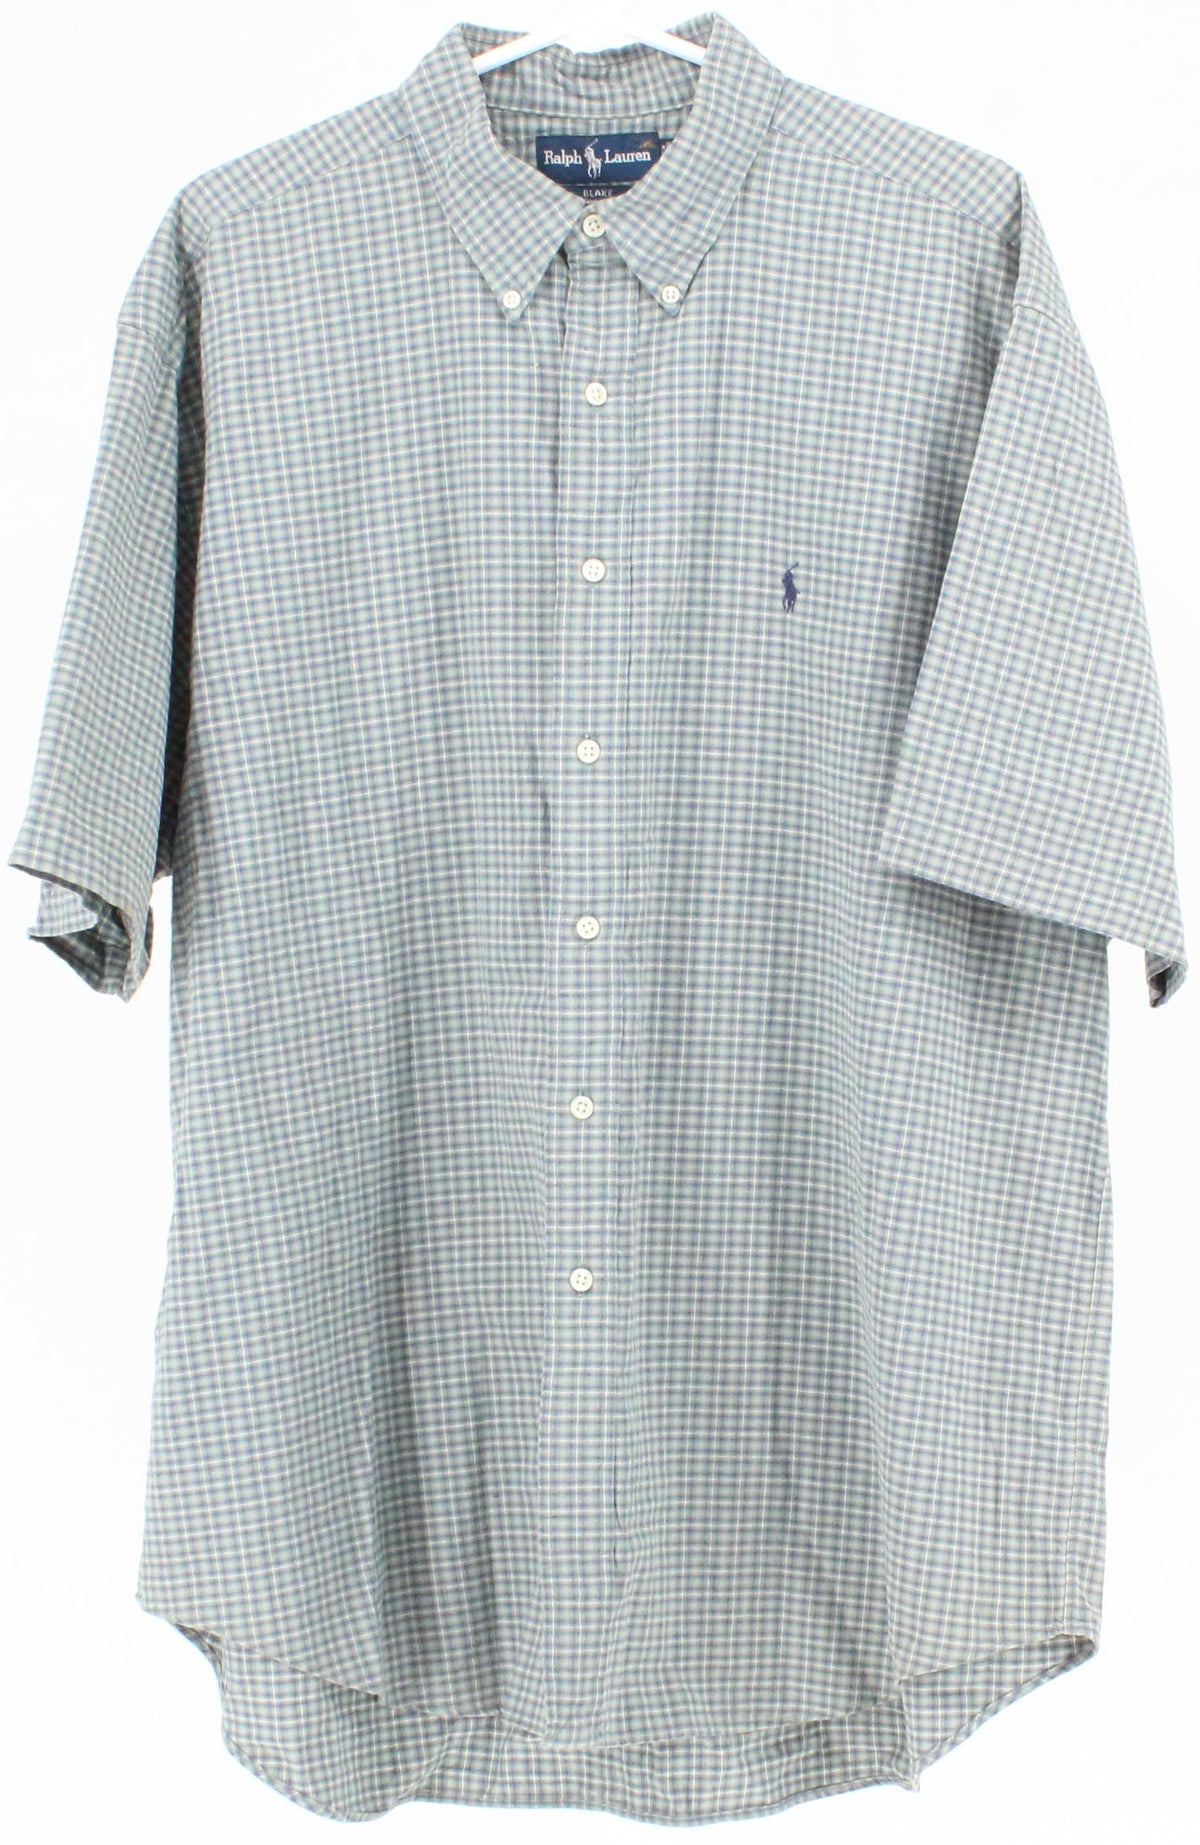 Ralph Lauren Blake Green and Blue Plaid Short Sleeve Shirt